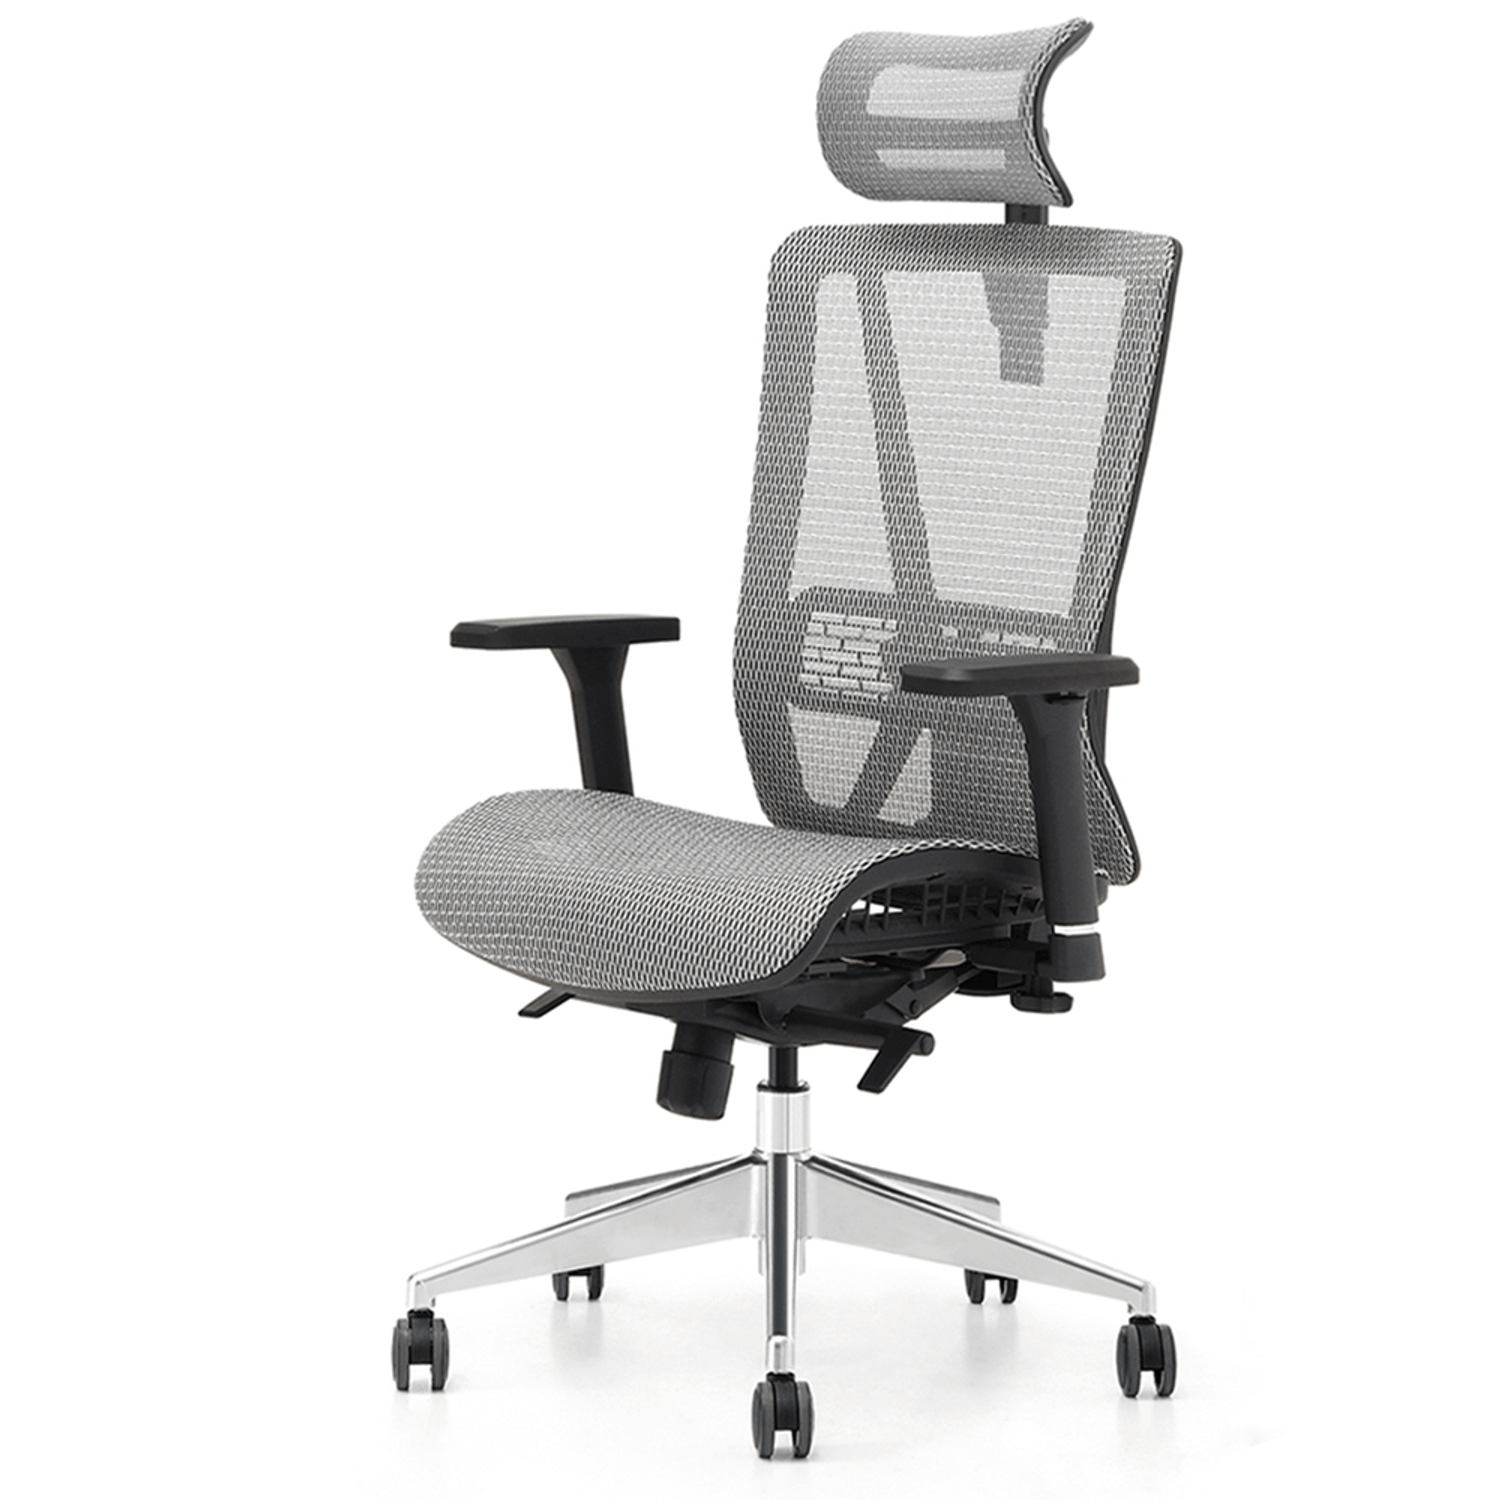 Кресло офисное спинка сетка. Huashi офисное кресло. Кресло с сетчатой спинкой. Кресло компьютерное сетчатое. Кресло с сеткой на спинке.